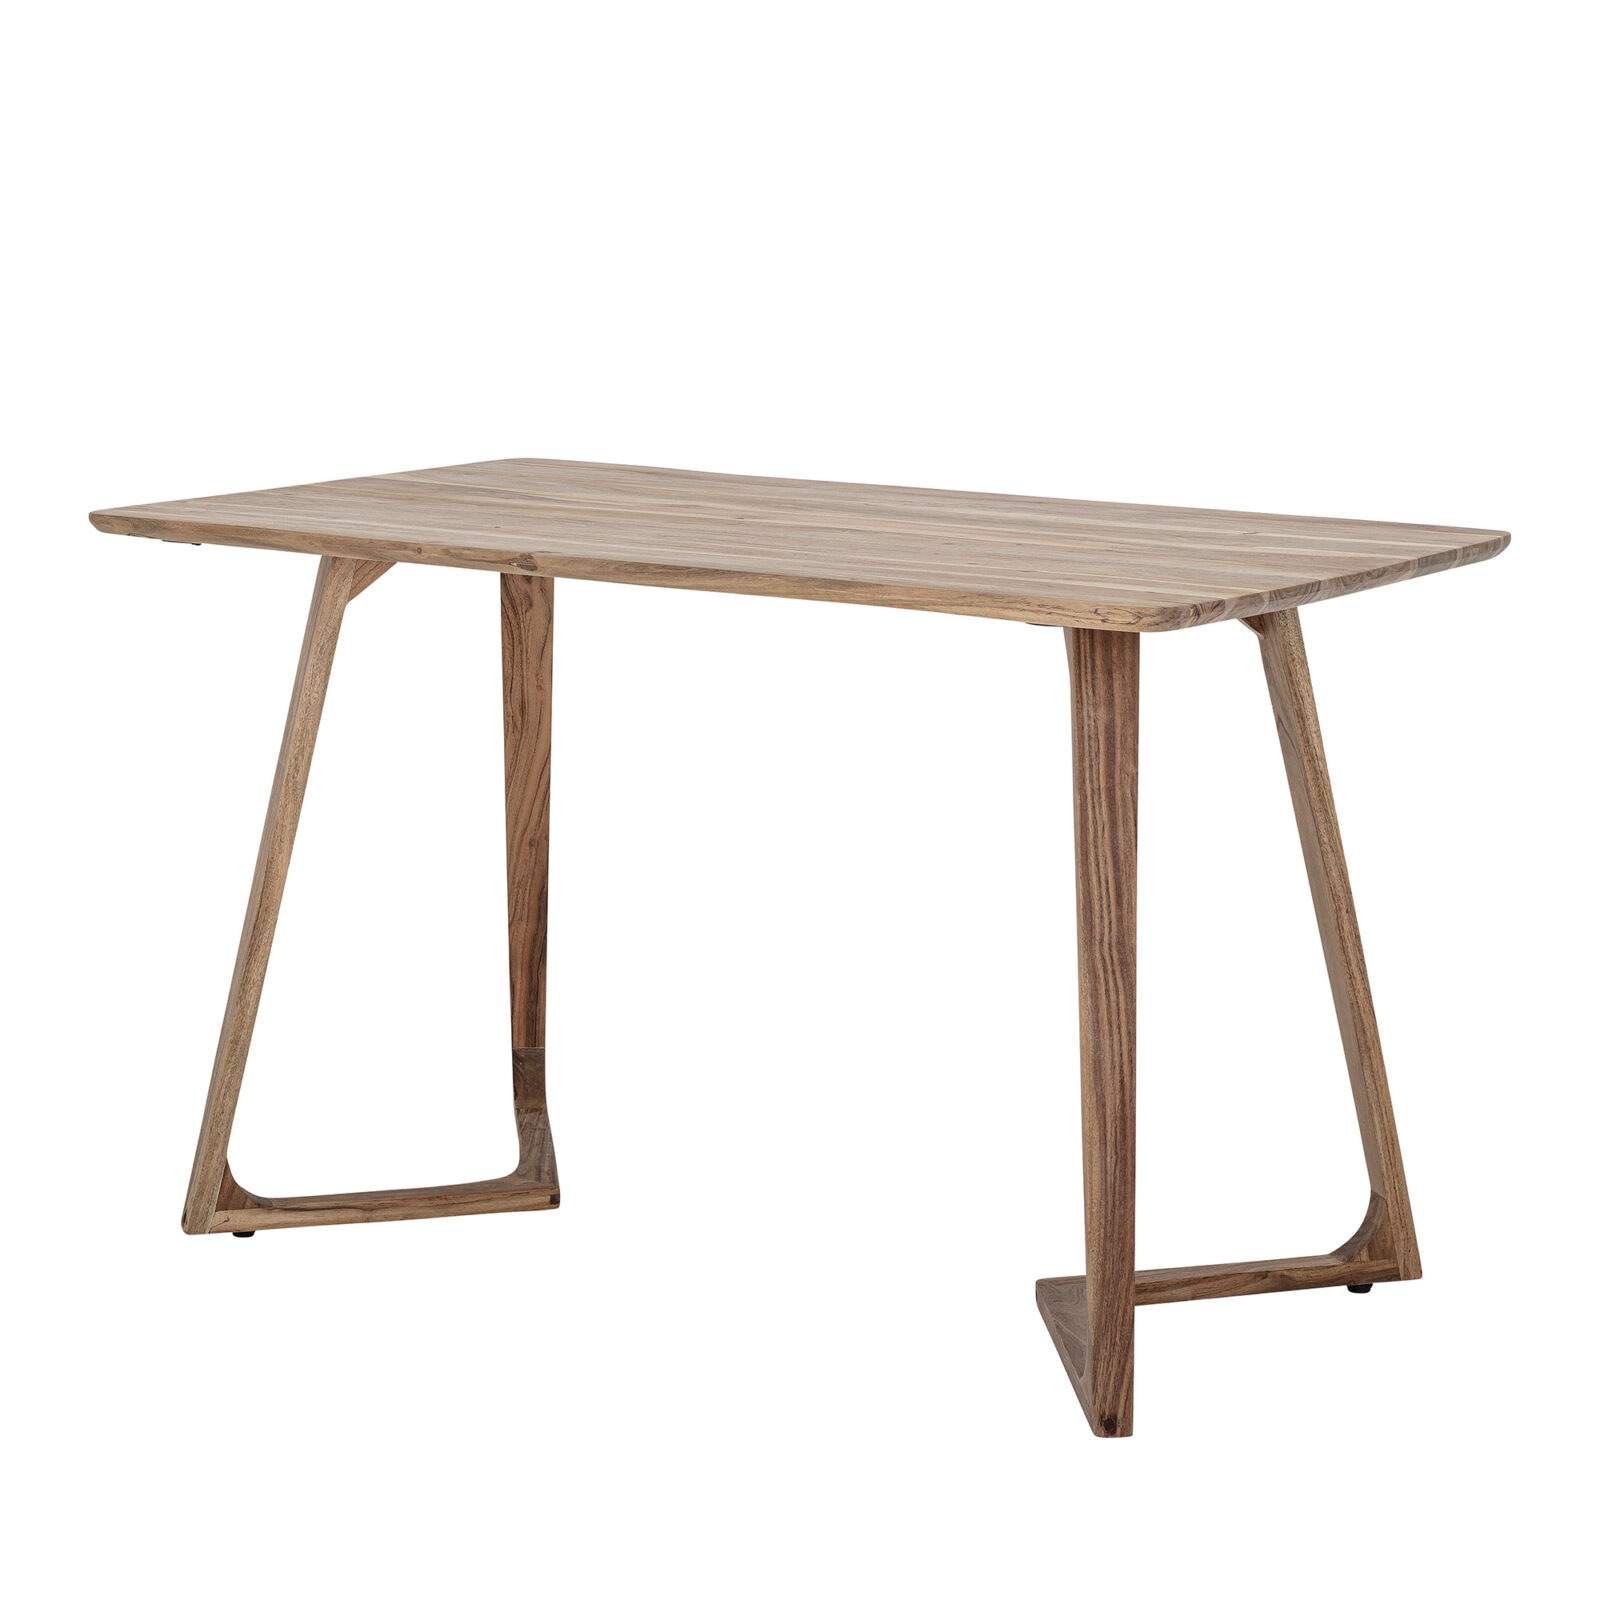 BLOOMINGVILLE Dřevěný jídelní stůl LUIE hnědý